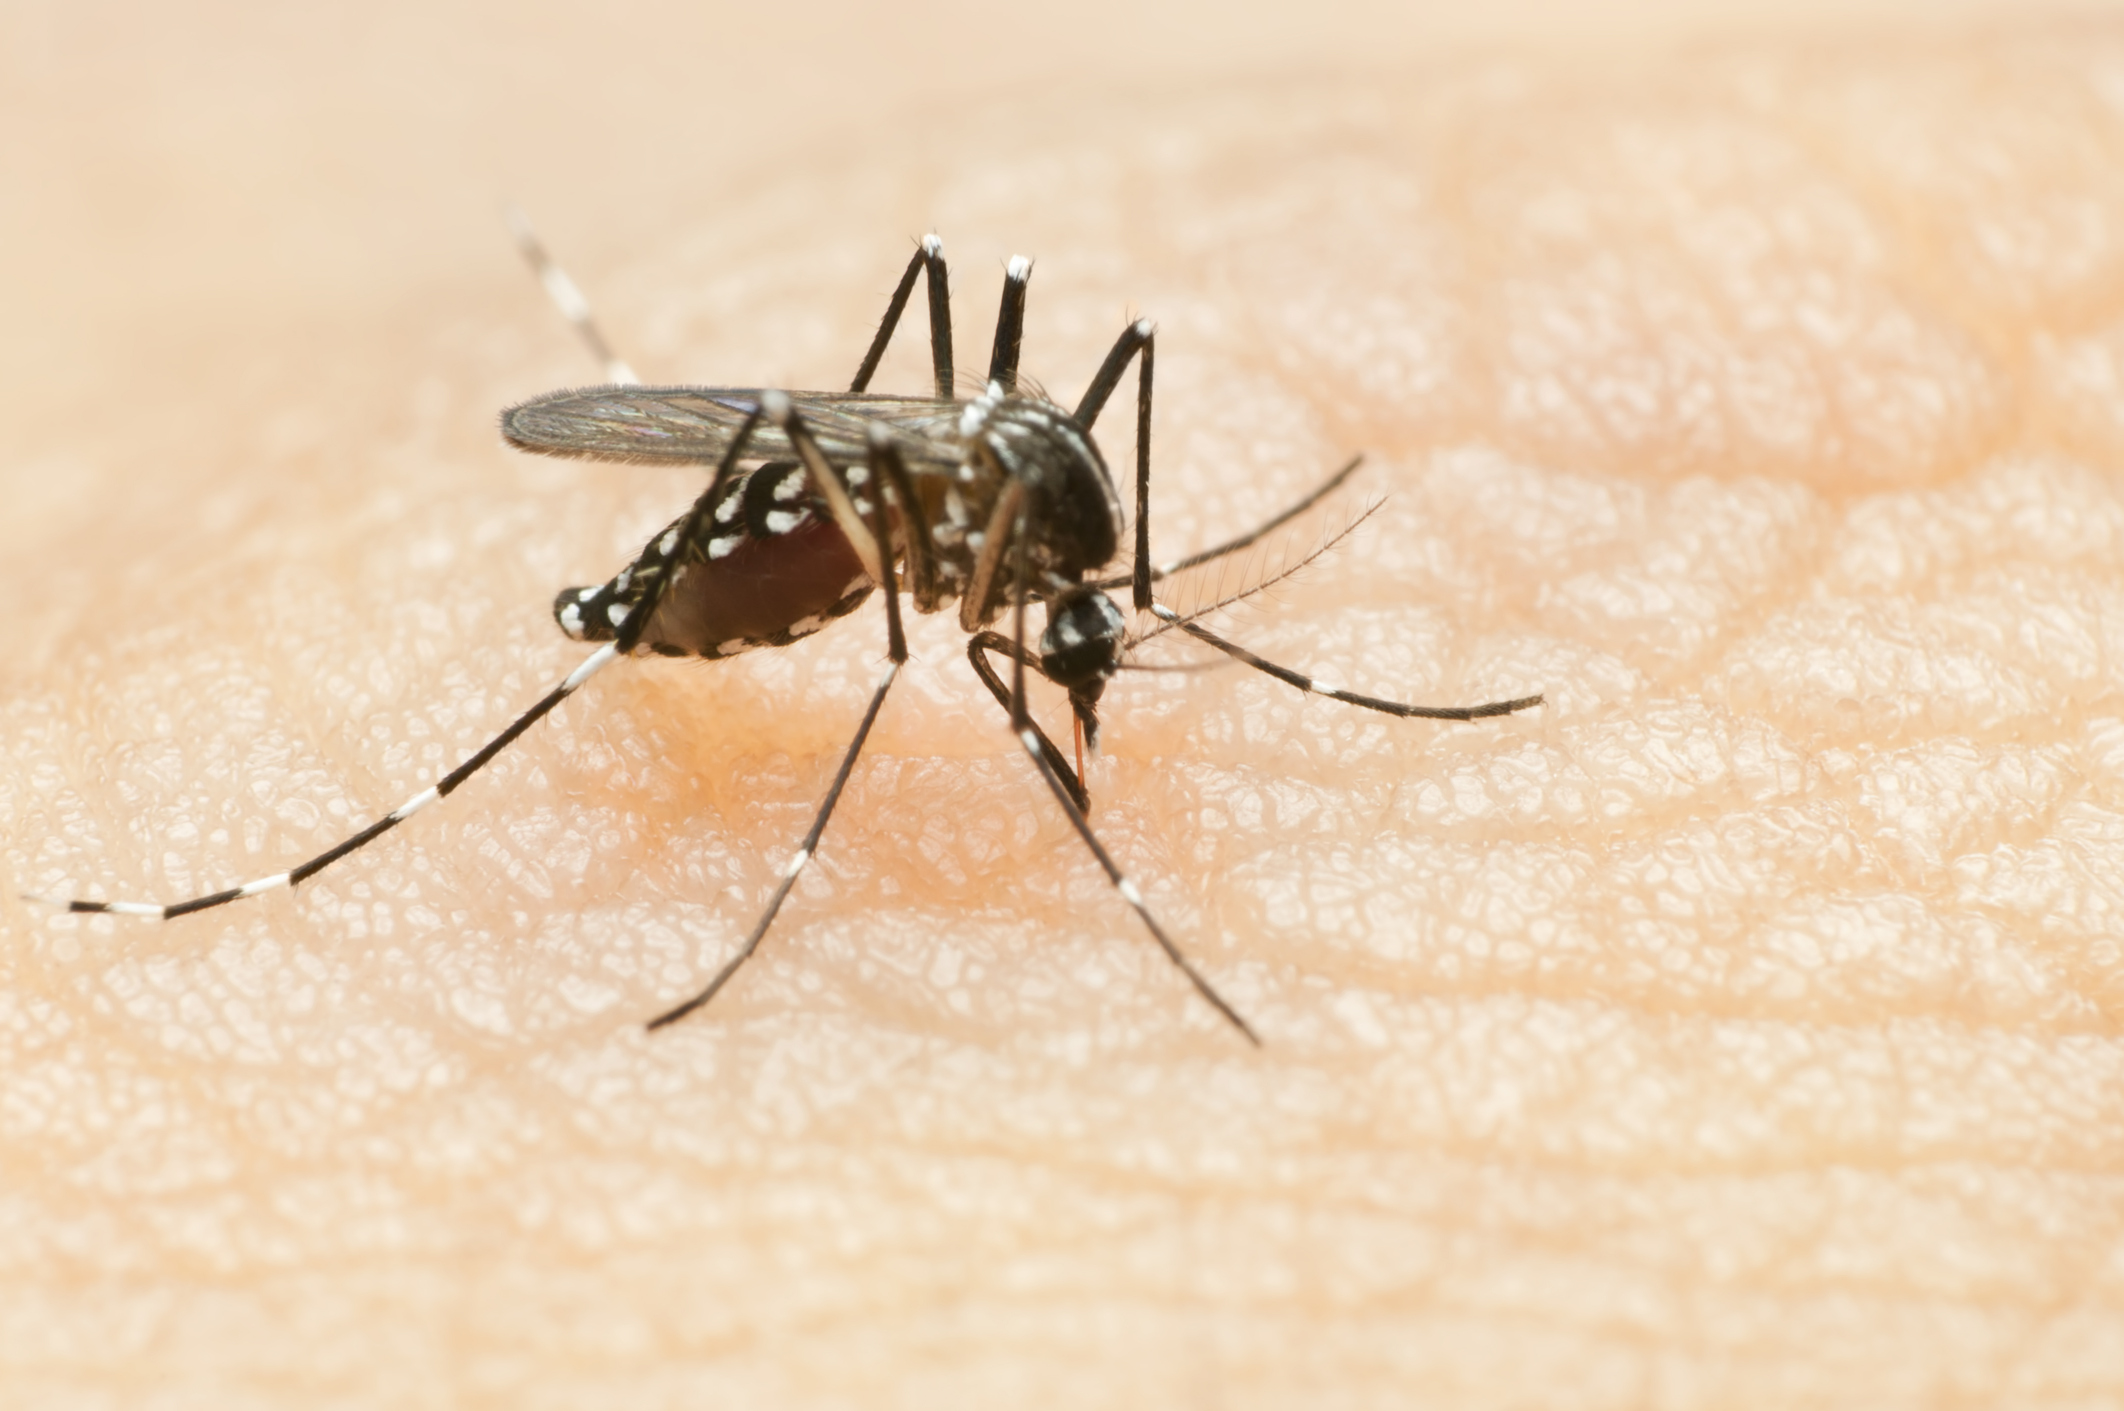 Na imagem, um mosquito da dengue está picando a pele de uma pessoa. O mosquito tem corpo preto e listras brancas, com asas translúcidas. Ele está posicionado sobre a pele exposta da pessoa, inserindo sua probóscide para picar.